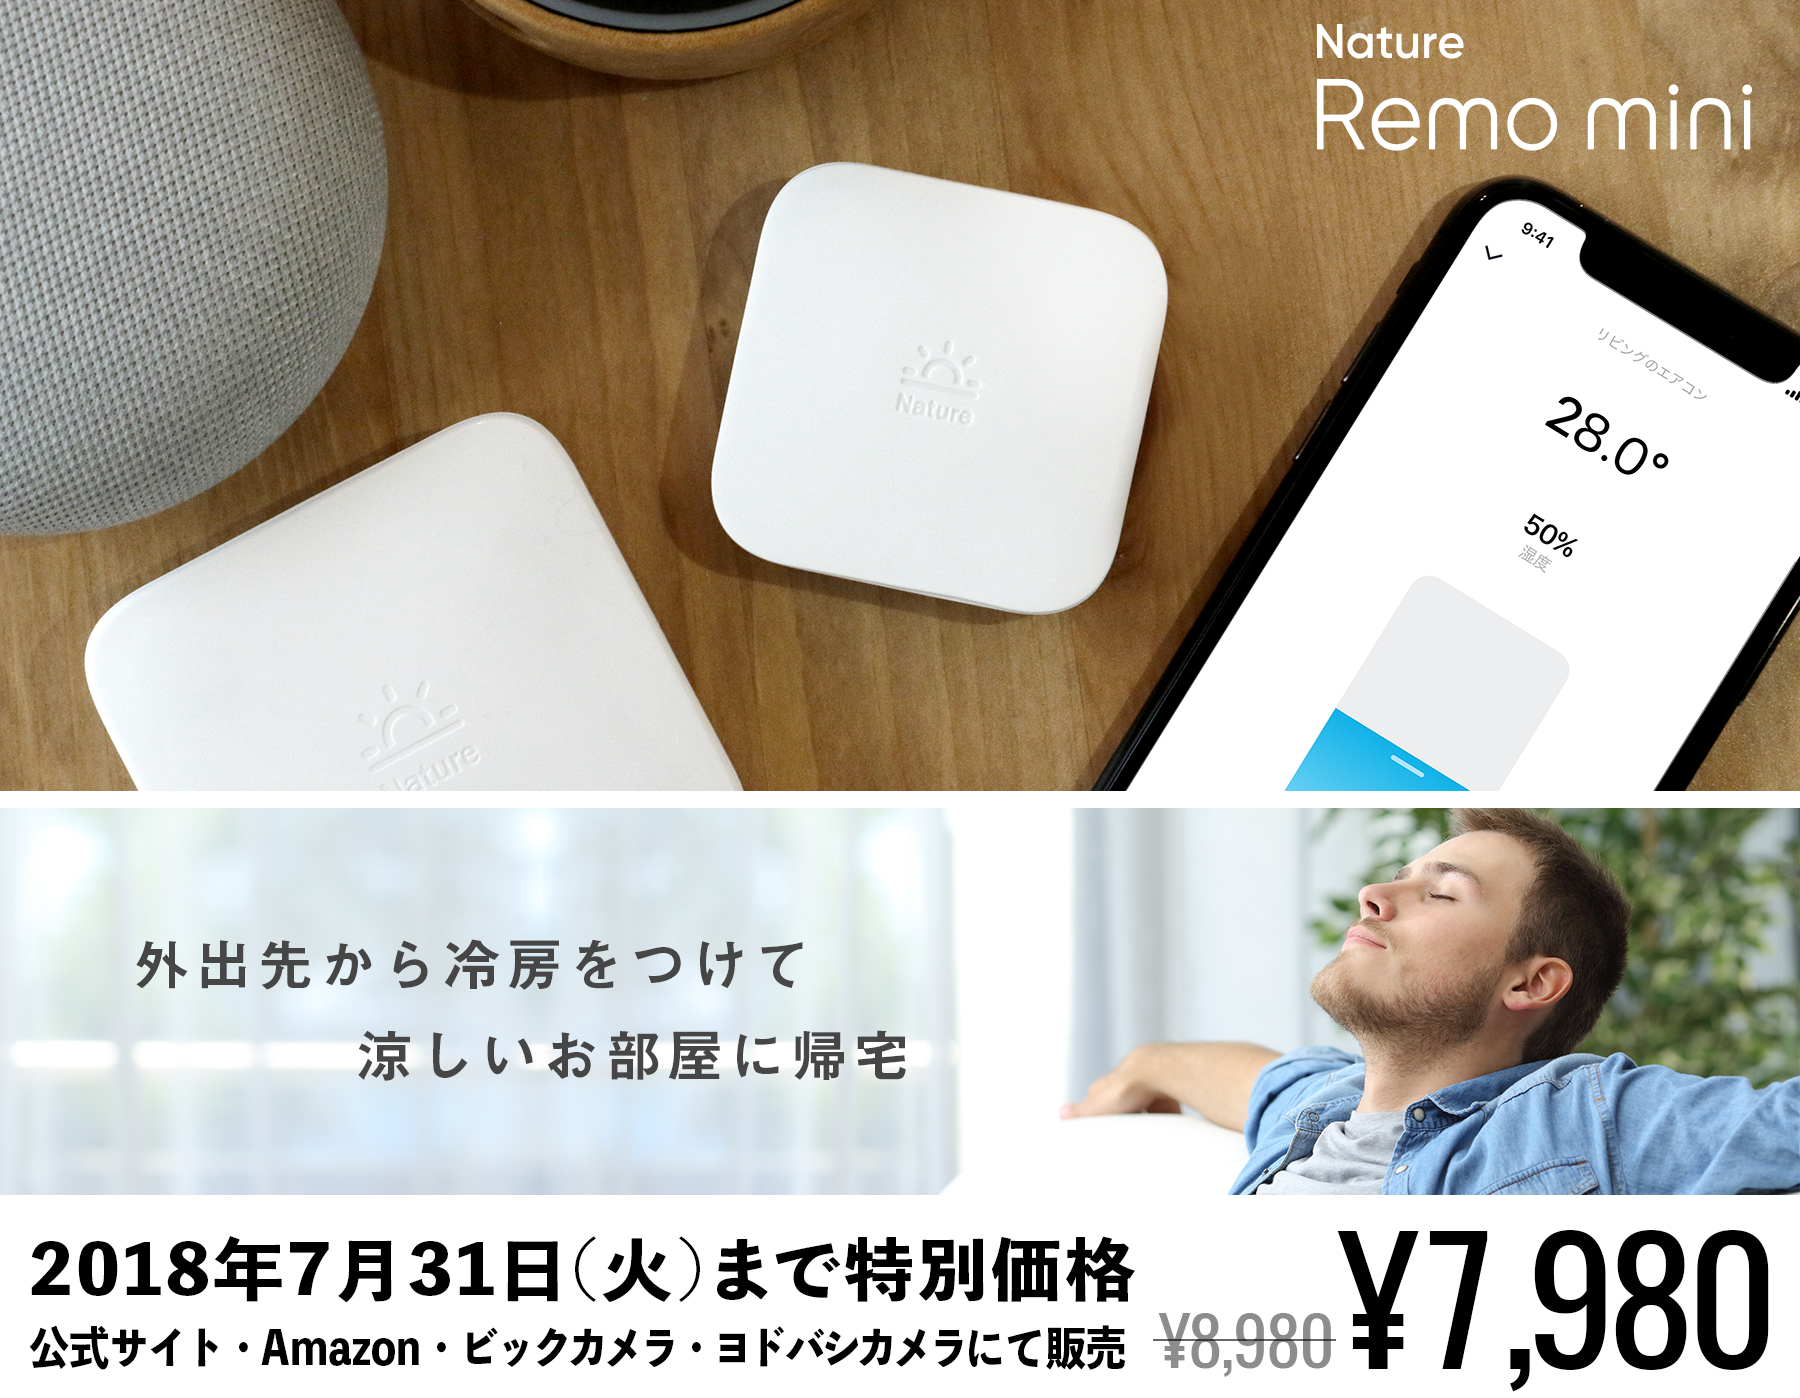 スマートリモコン「Nature Remo mini」本日発売！7月31日まで発売記念特価7,980円。Twitter&インスタグラムプレゼント